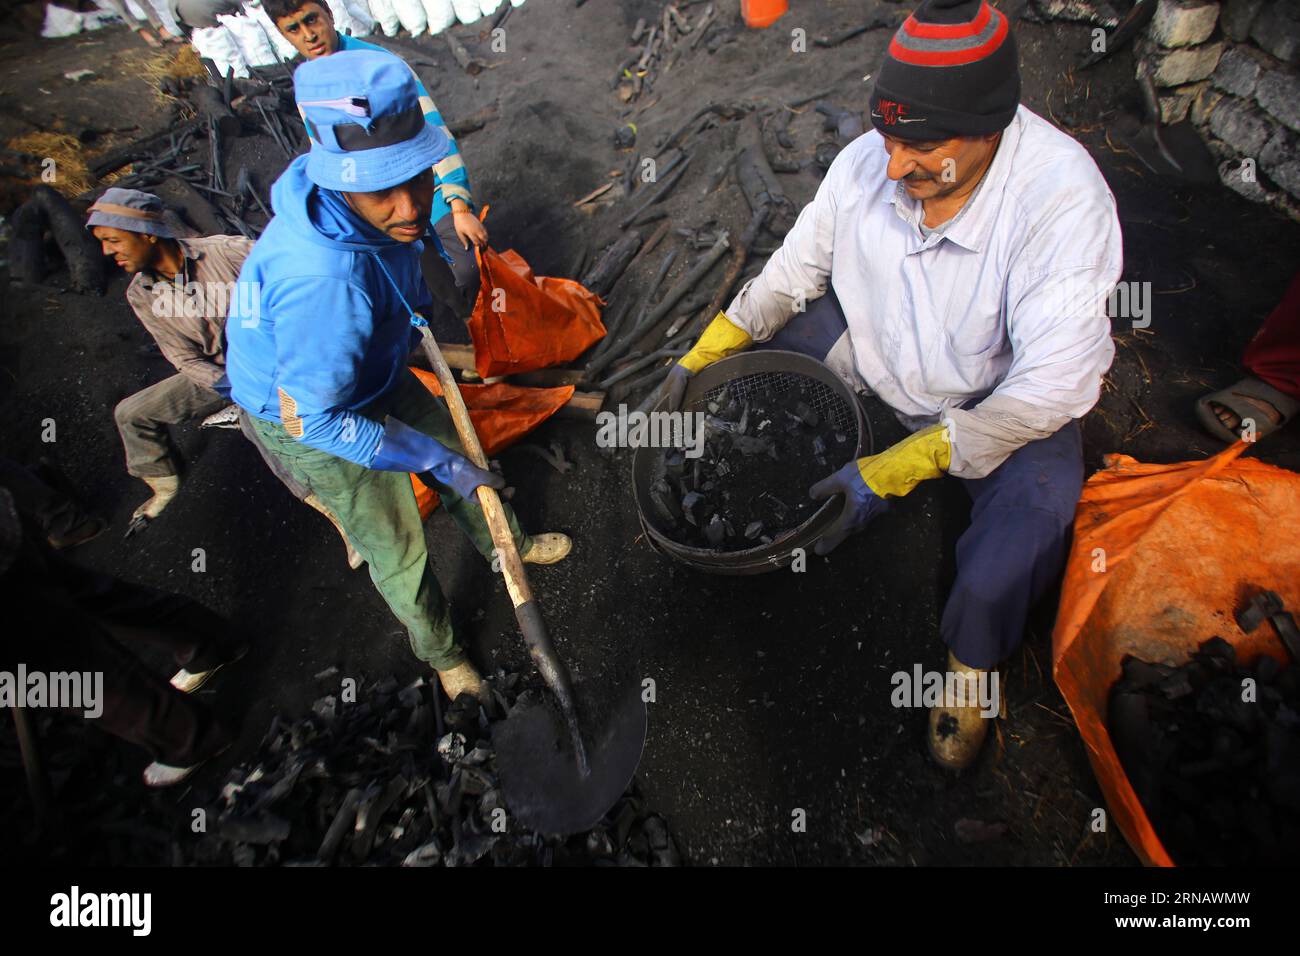 Les travailleurs égyptiens du charbon de bois travaillent dans une usine de charbon de bois à Sharqia, en Égypte, le 7 février 2016. Il y avait environ 300 usines de charbon en Egypte avec plus de 5 000 travailleurs employés. Mais le gouvernement égyptien en ferme maintenant beaucoup pour réduire la pollution environnementale causée par les unités industrielles de charbon de bois. )(zhf) ÉGYPTE-SHARQIA-PRODUCTION DE CHARBON AhmedxGomaa PUBLICATIONxNOTxINxCHN les travailleurs égyptiens de charbon travaillent DANS une usine de charbon à Sharqia Egypte LE 7 2016 février, il y avait environ 300 usines de charbon en Egypte avec plus de 5 000 travailleurs employés, mais le gouvernement égyptien EST maintenant CLO Banque D'Images